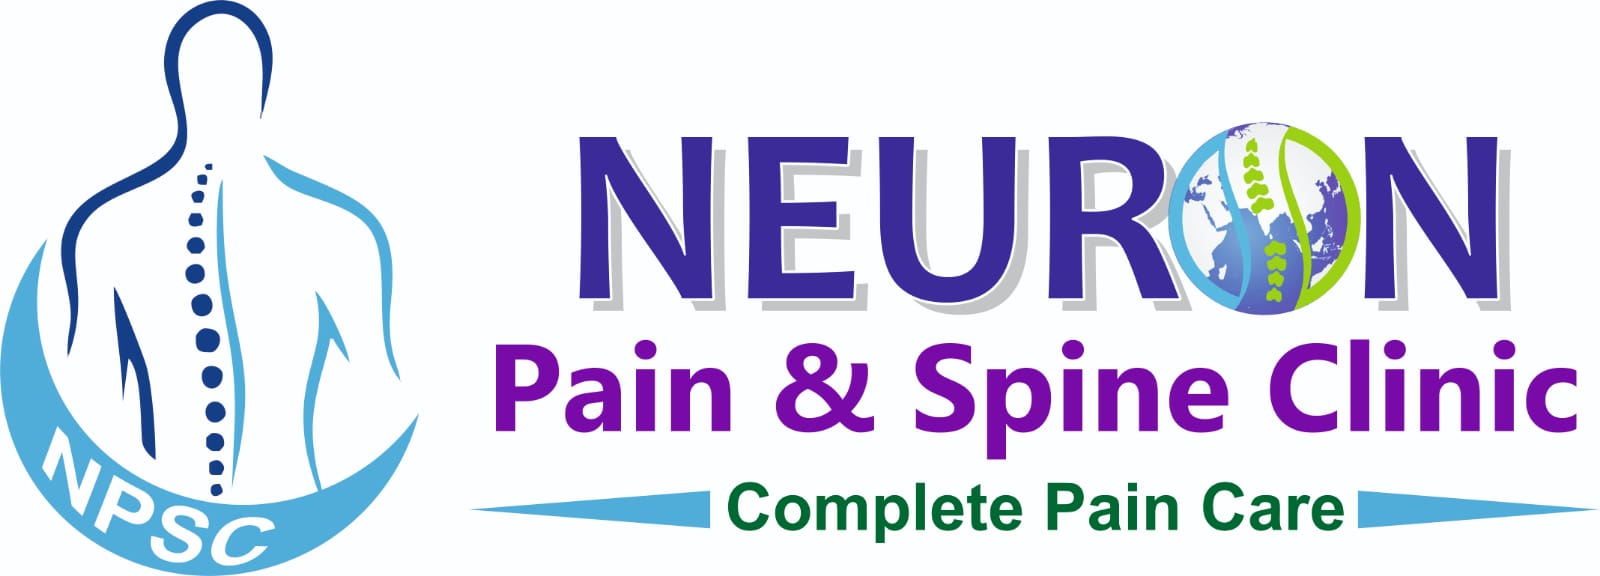 Pain Management Blogs | Spine & Pain Center – Neuronpainclinic